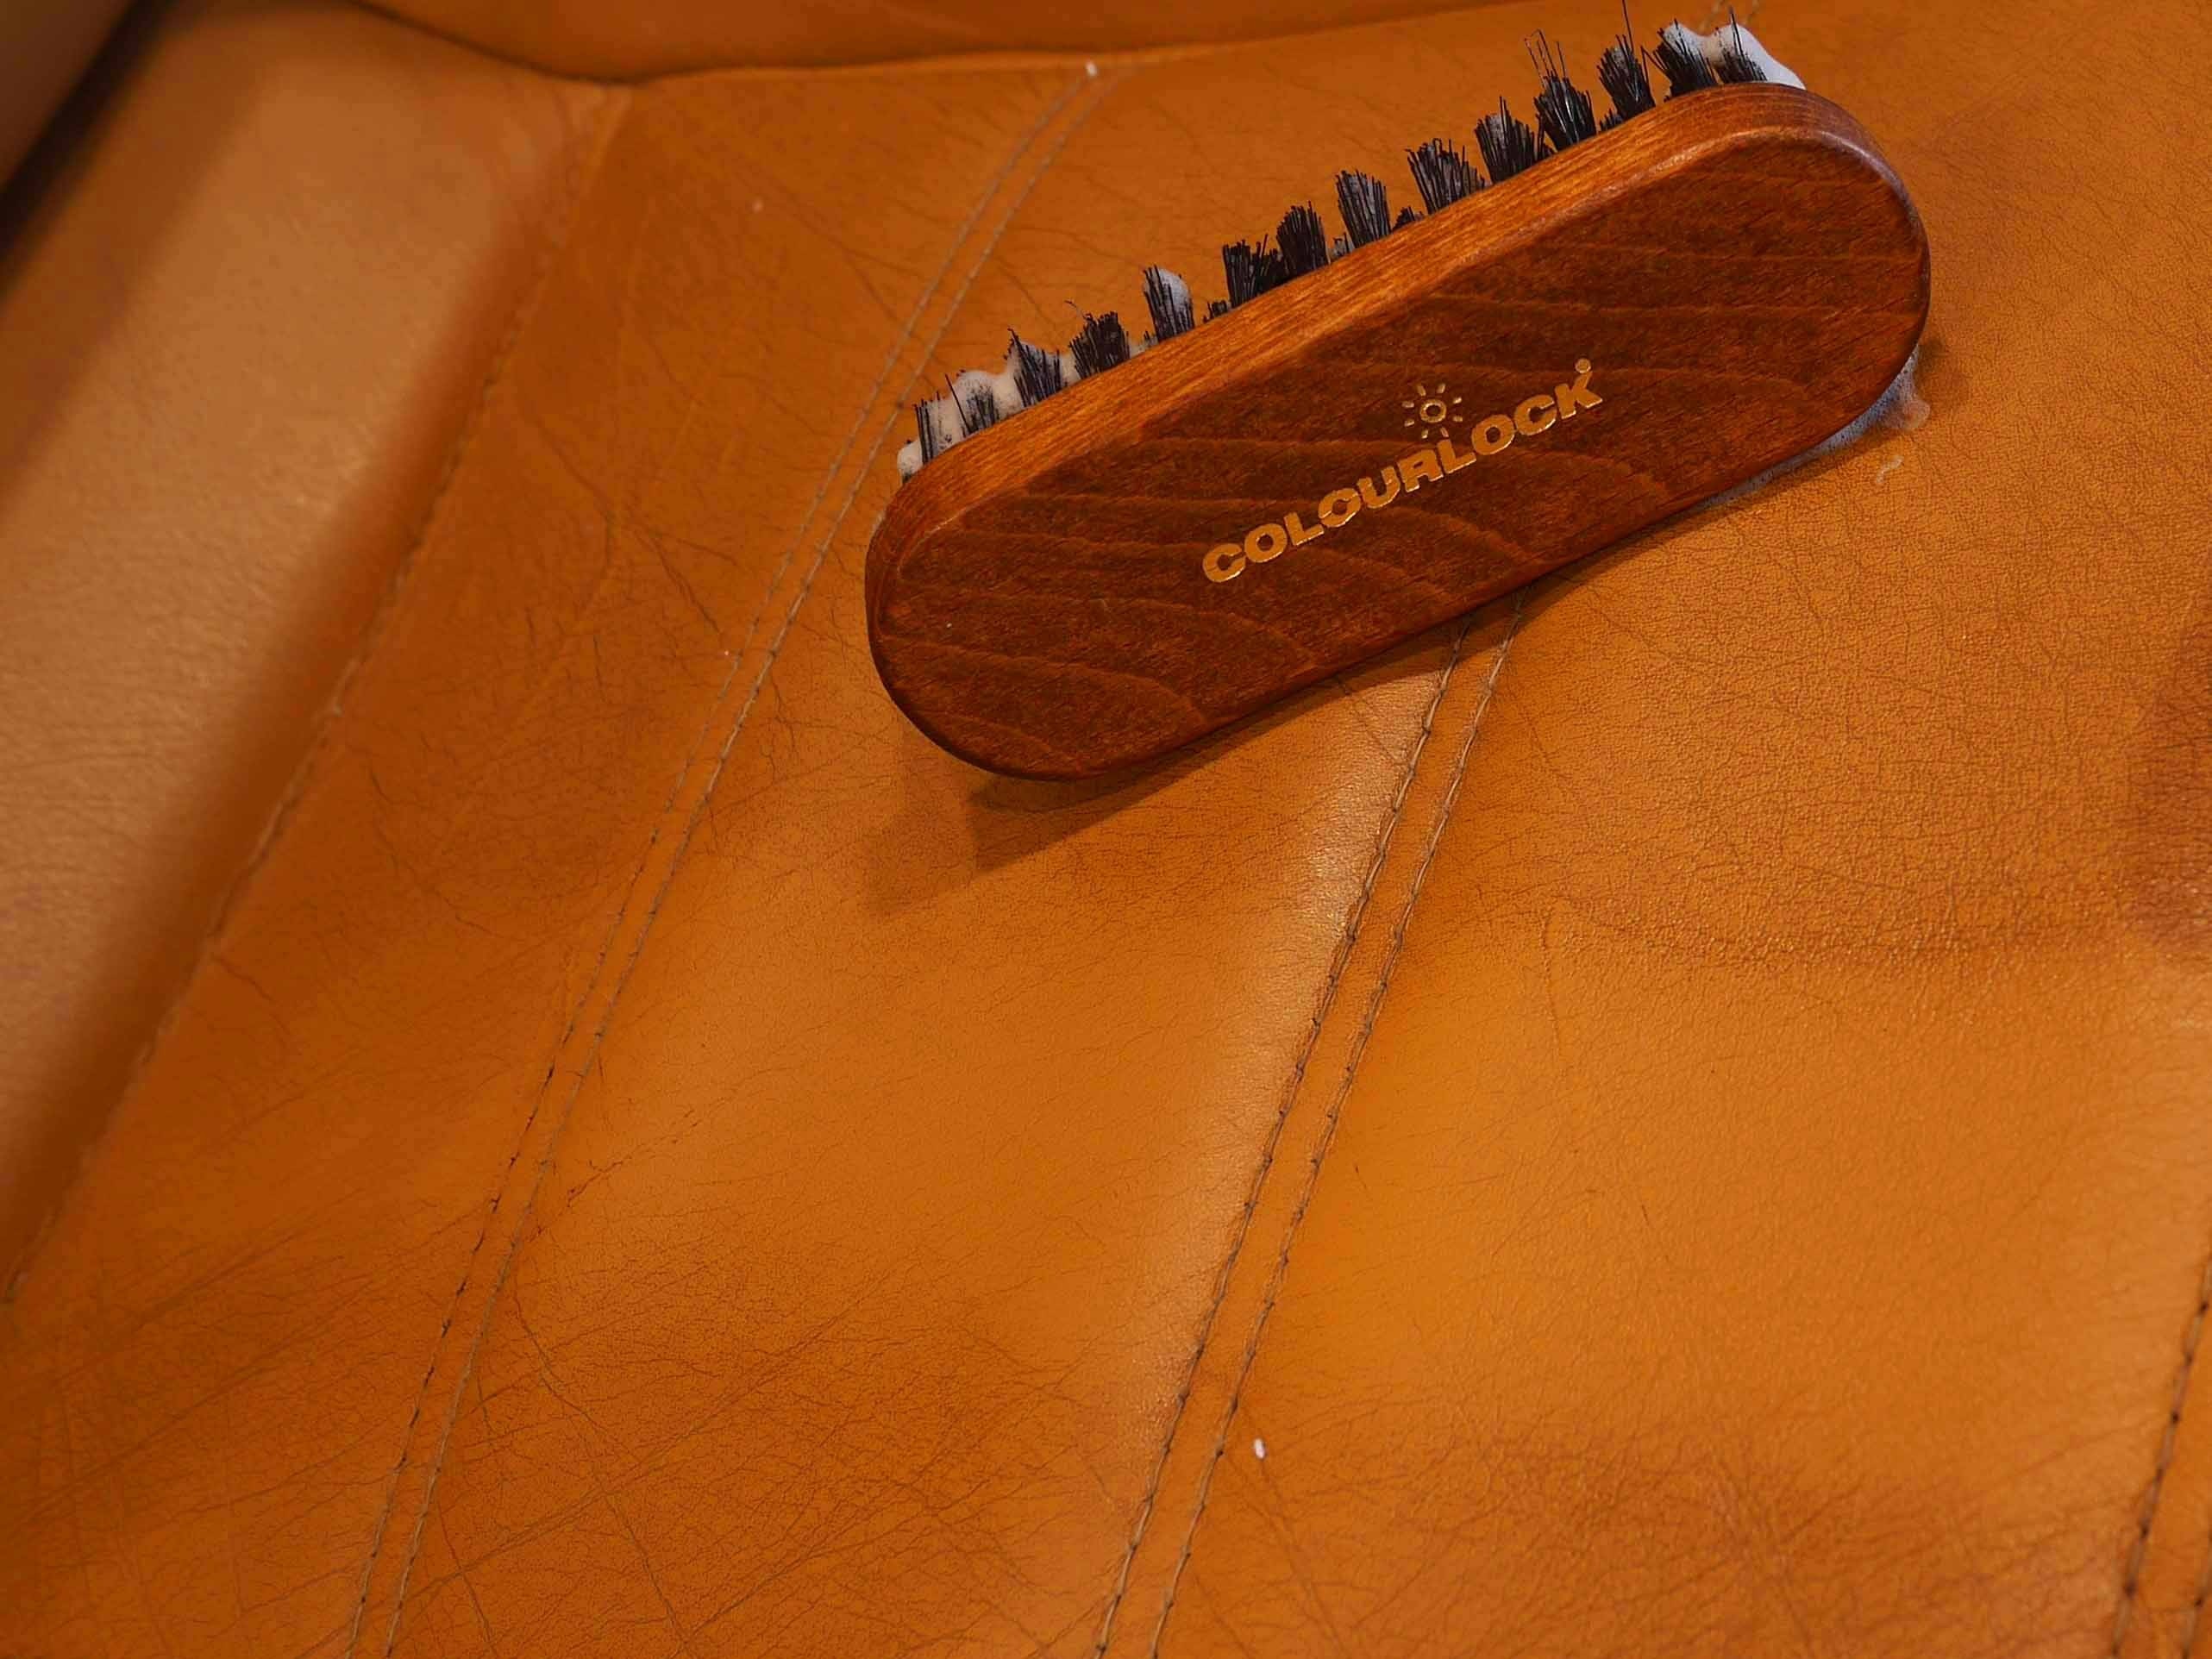 Brosse de nettoyage COLOURLOCK pour cuir   - Les spécialistes  du cuir